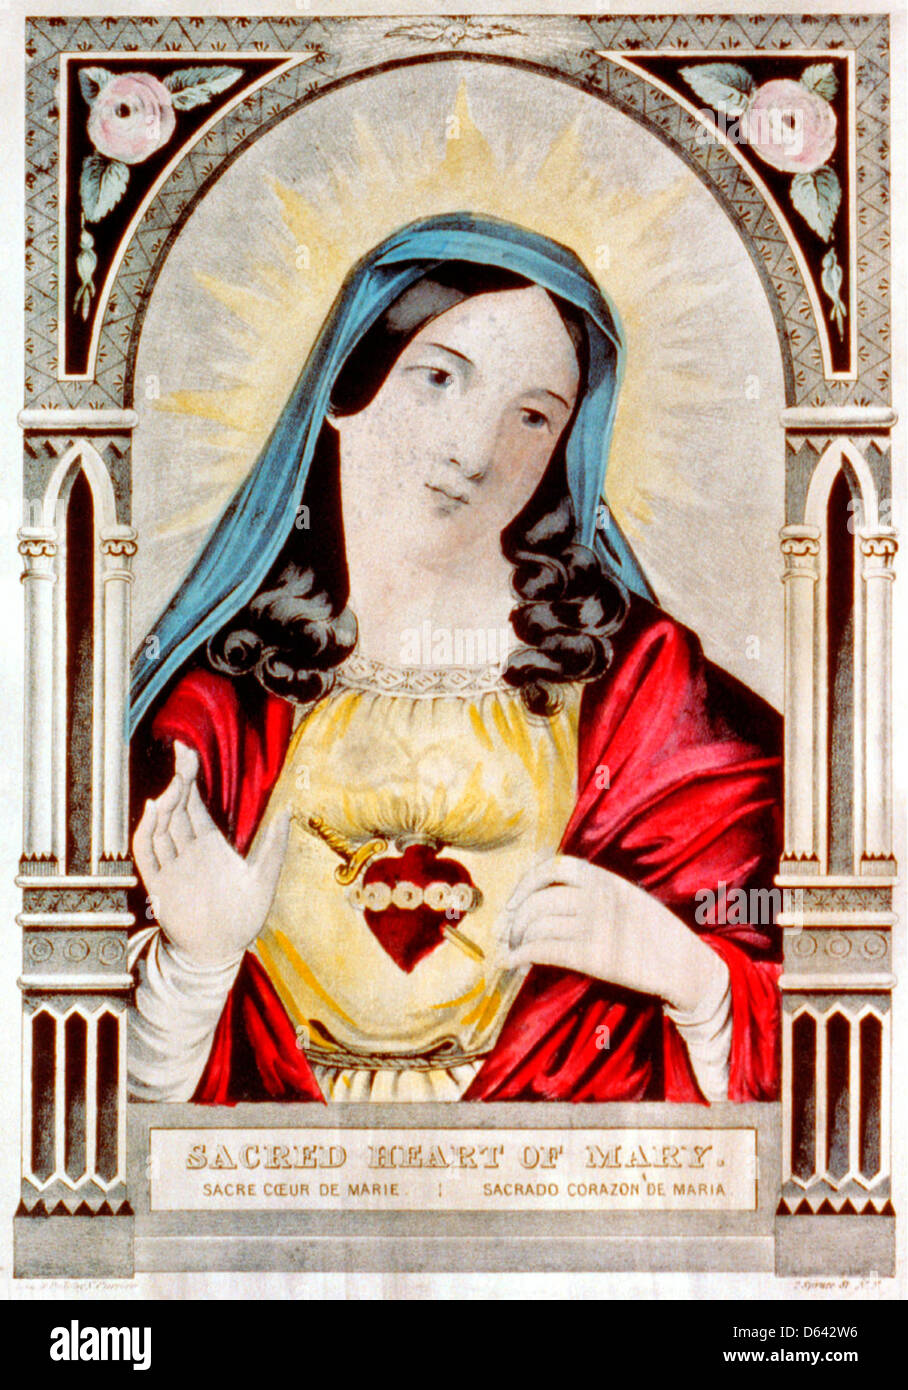 Sacred heart of Mary: sacre coeur de Marie / sacrado corazon de Maria - hand colored lithograph circa 1850 Stock Photo